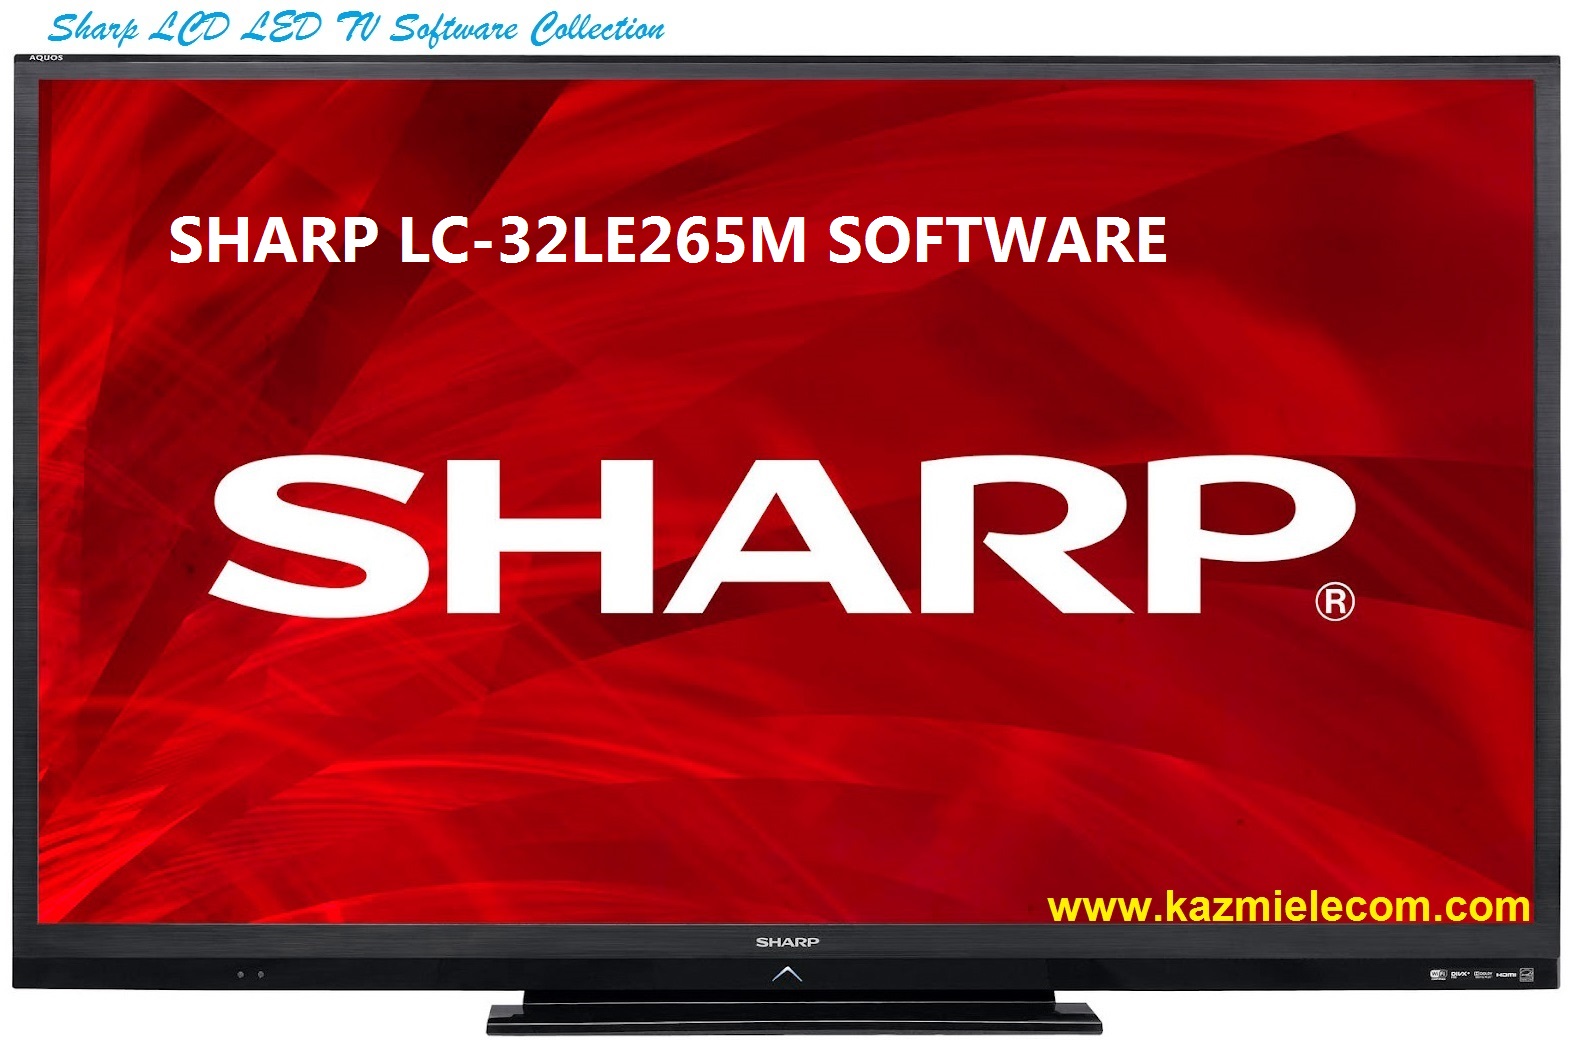 Sharp Lc-32Le265M